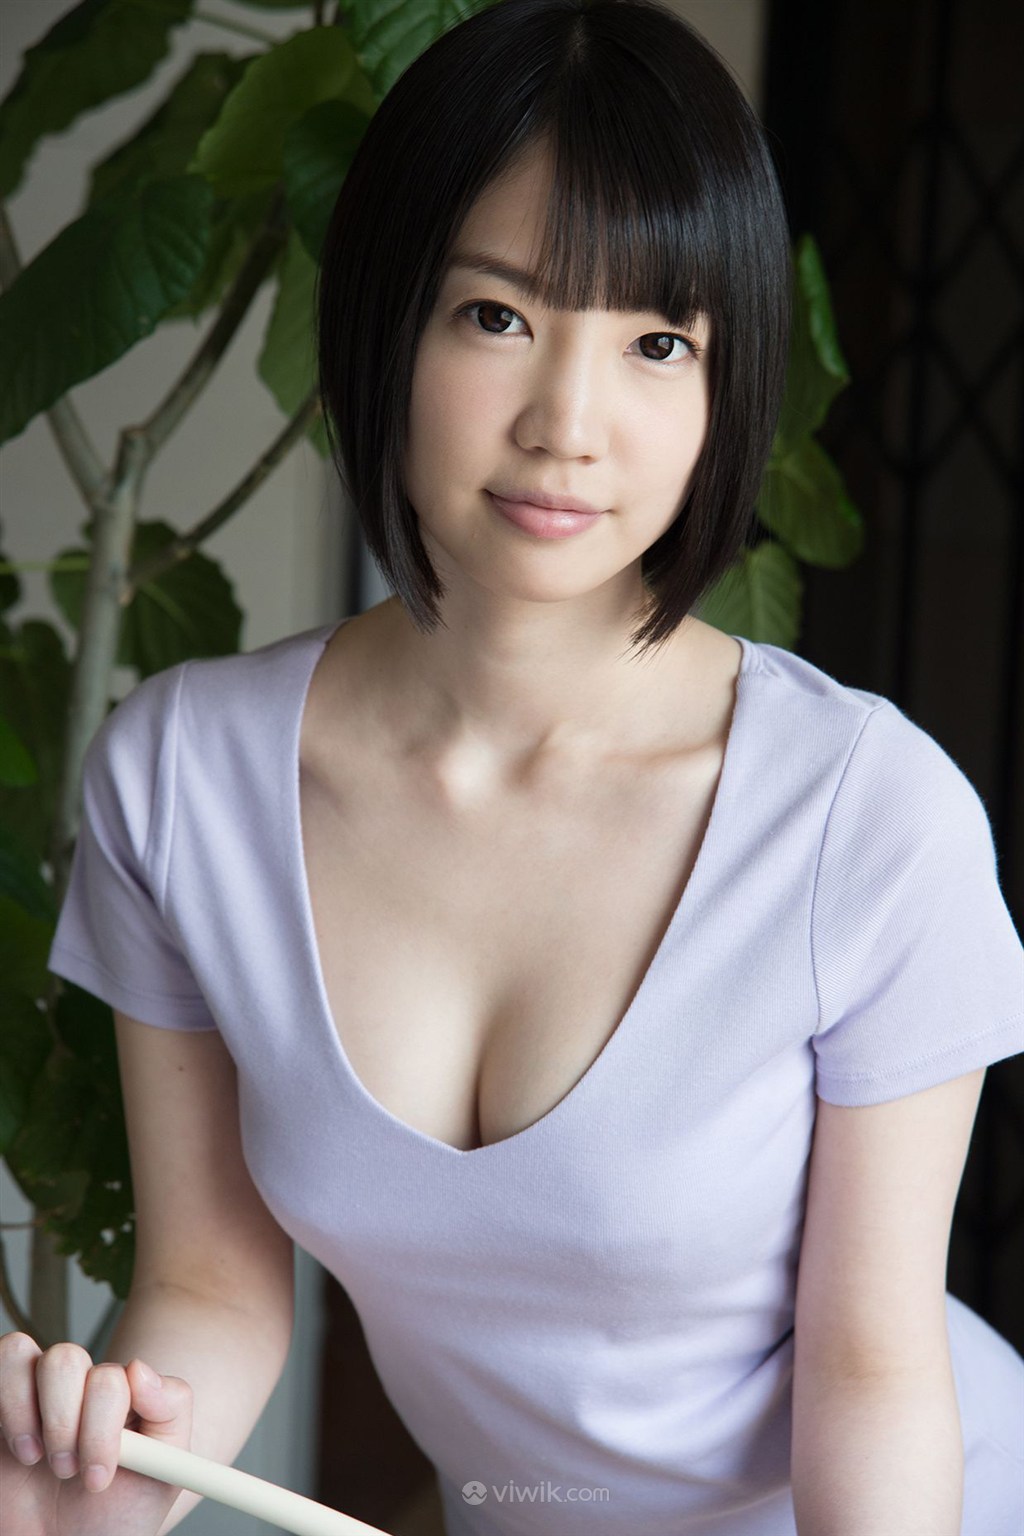 T恤低胸大胆日本性感美胸美女图片